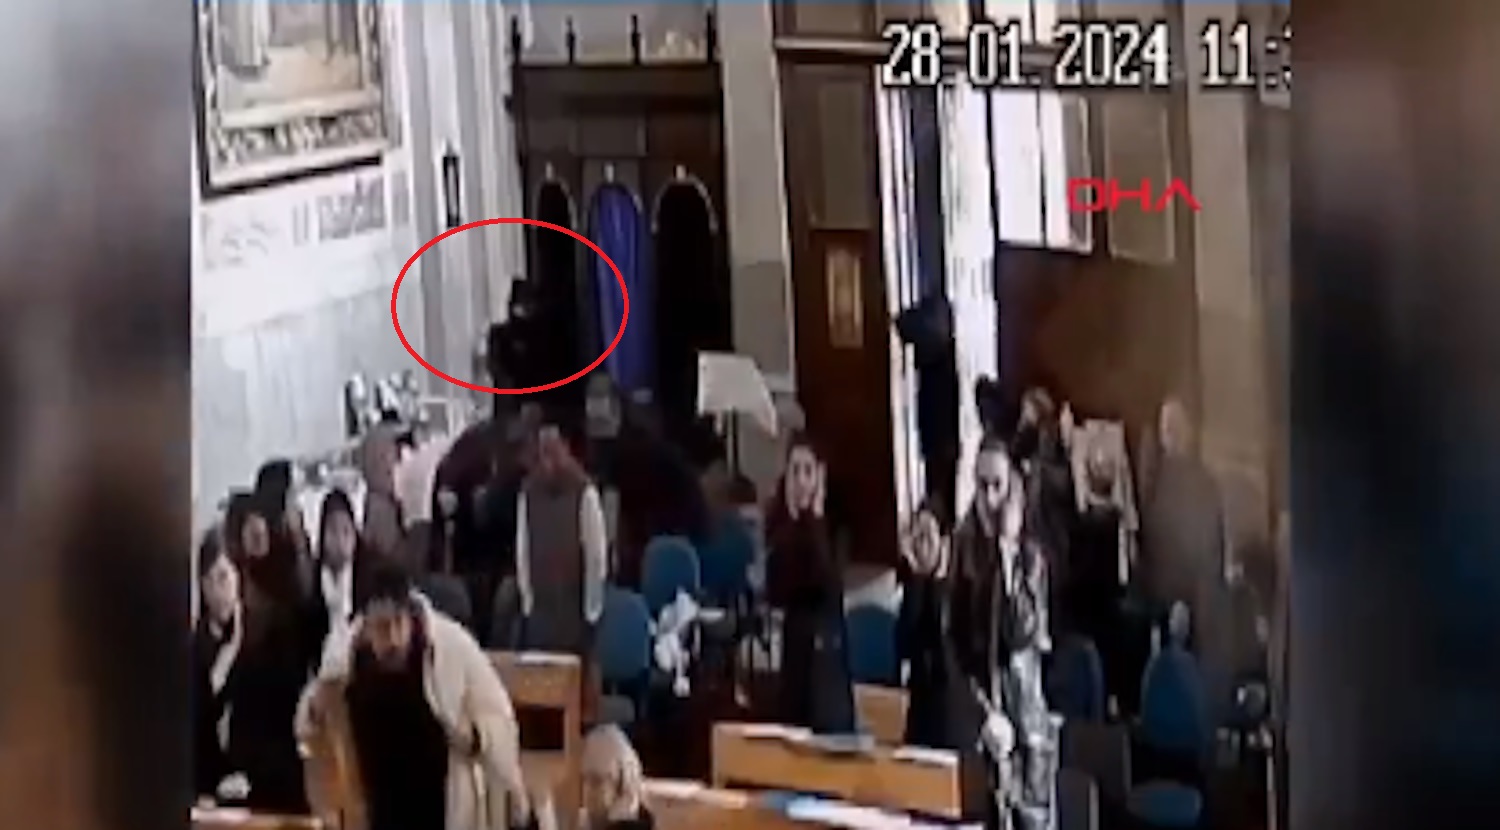 Κωνσταντινούπολη: Βίντεο ντοκουμέντο από τους πυροβολισμούς σε καθολική εκκλησία